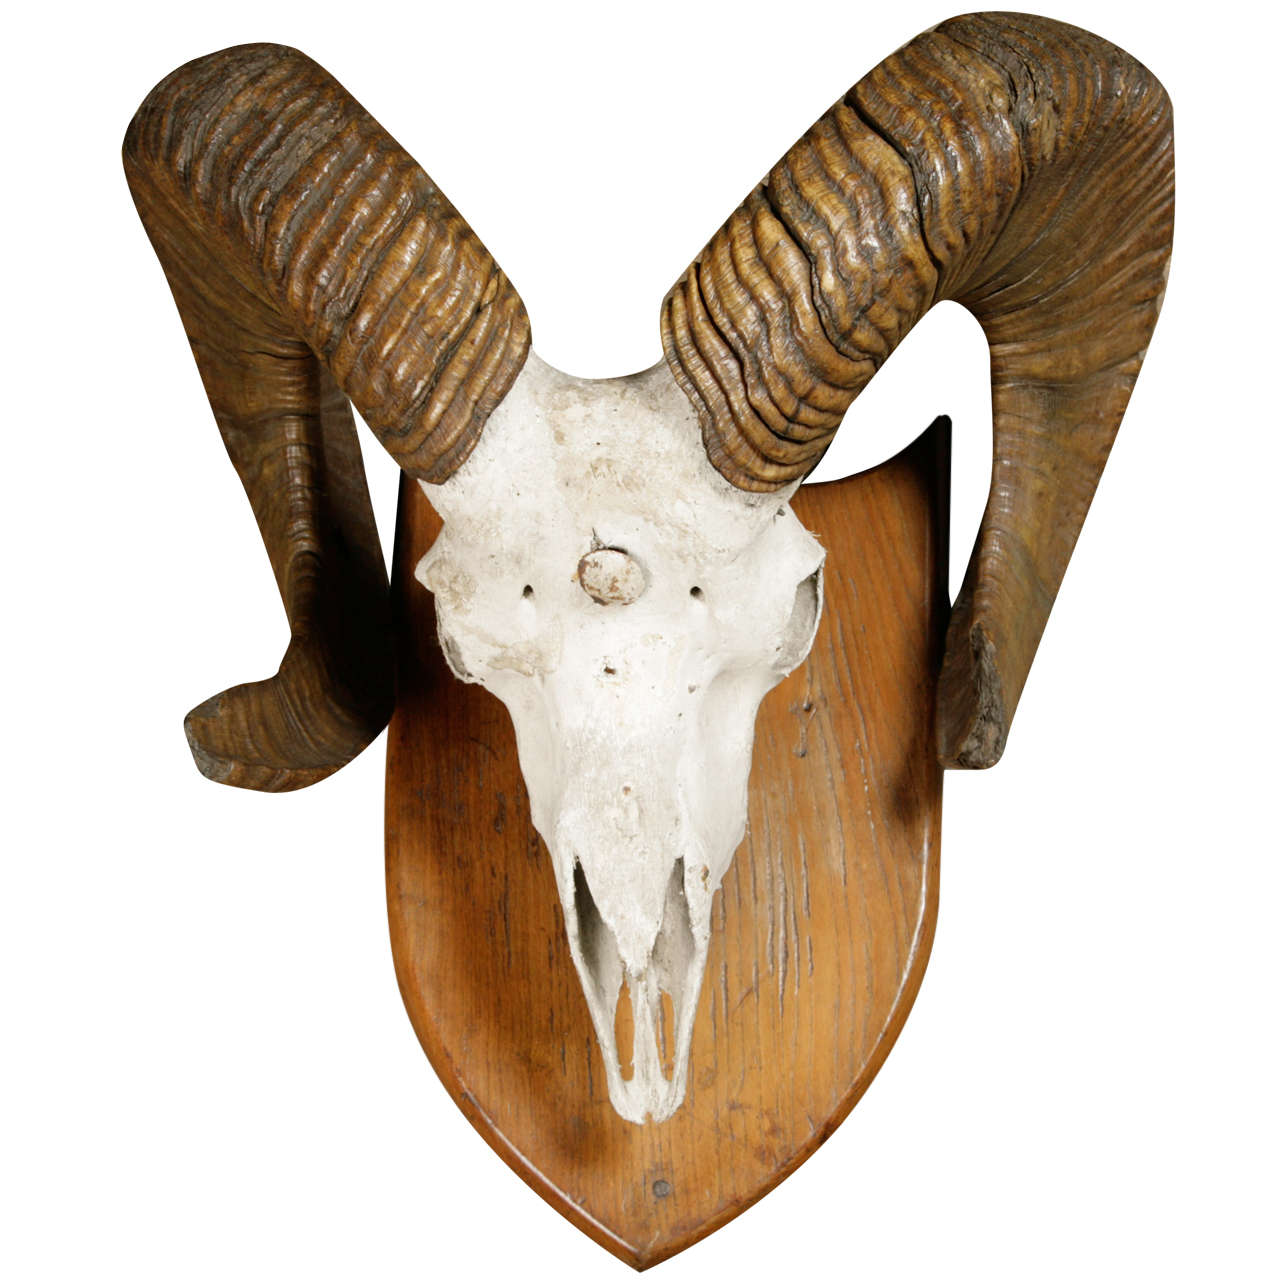 A Skull and Horns of a Argali Sheep. 